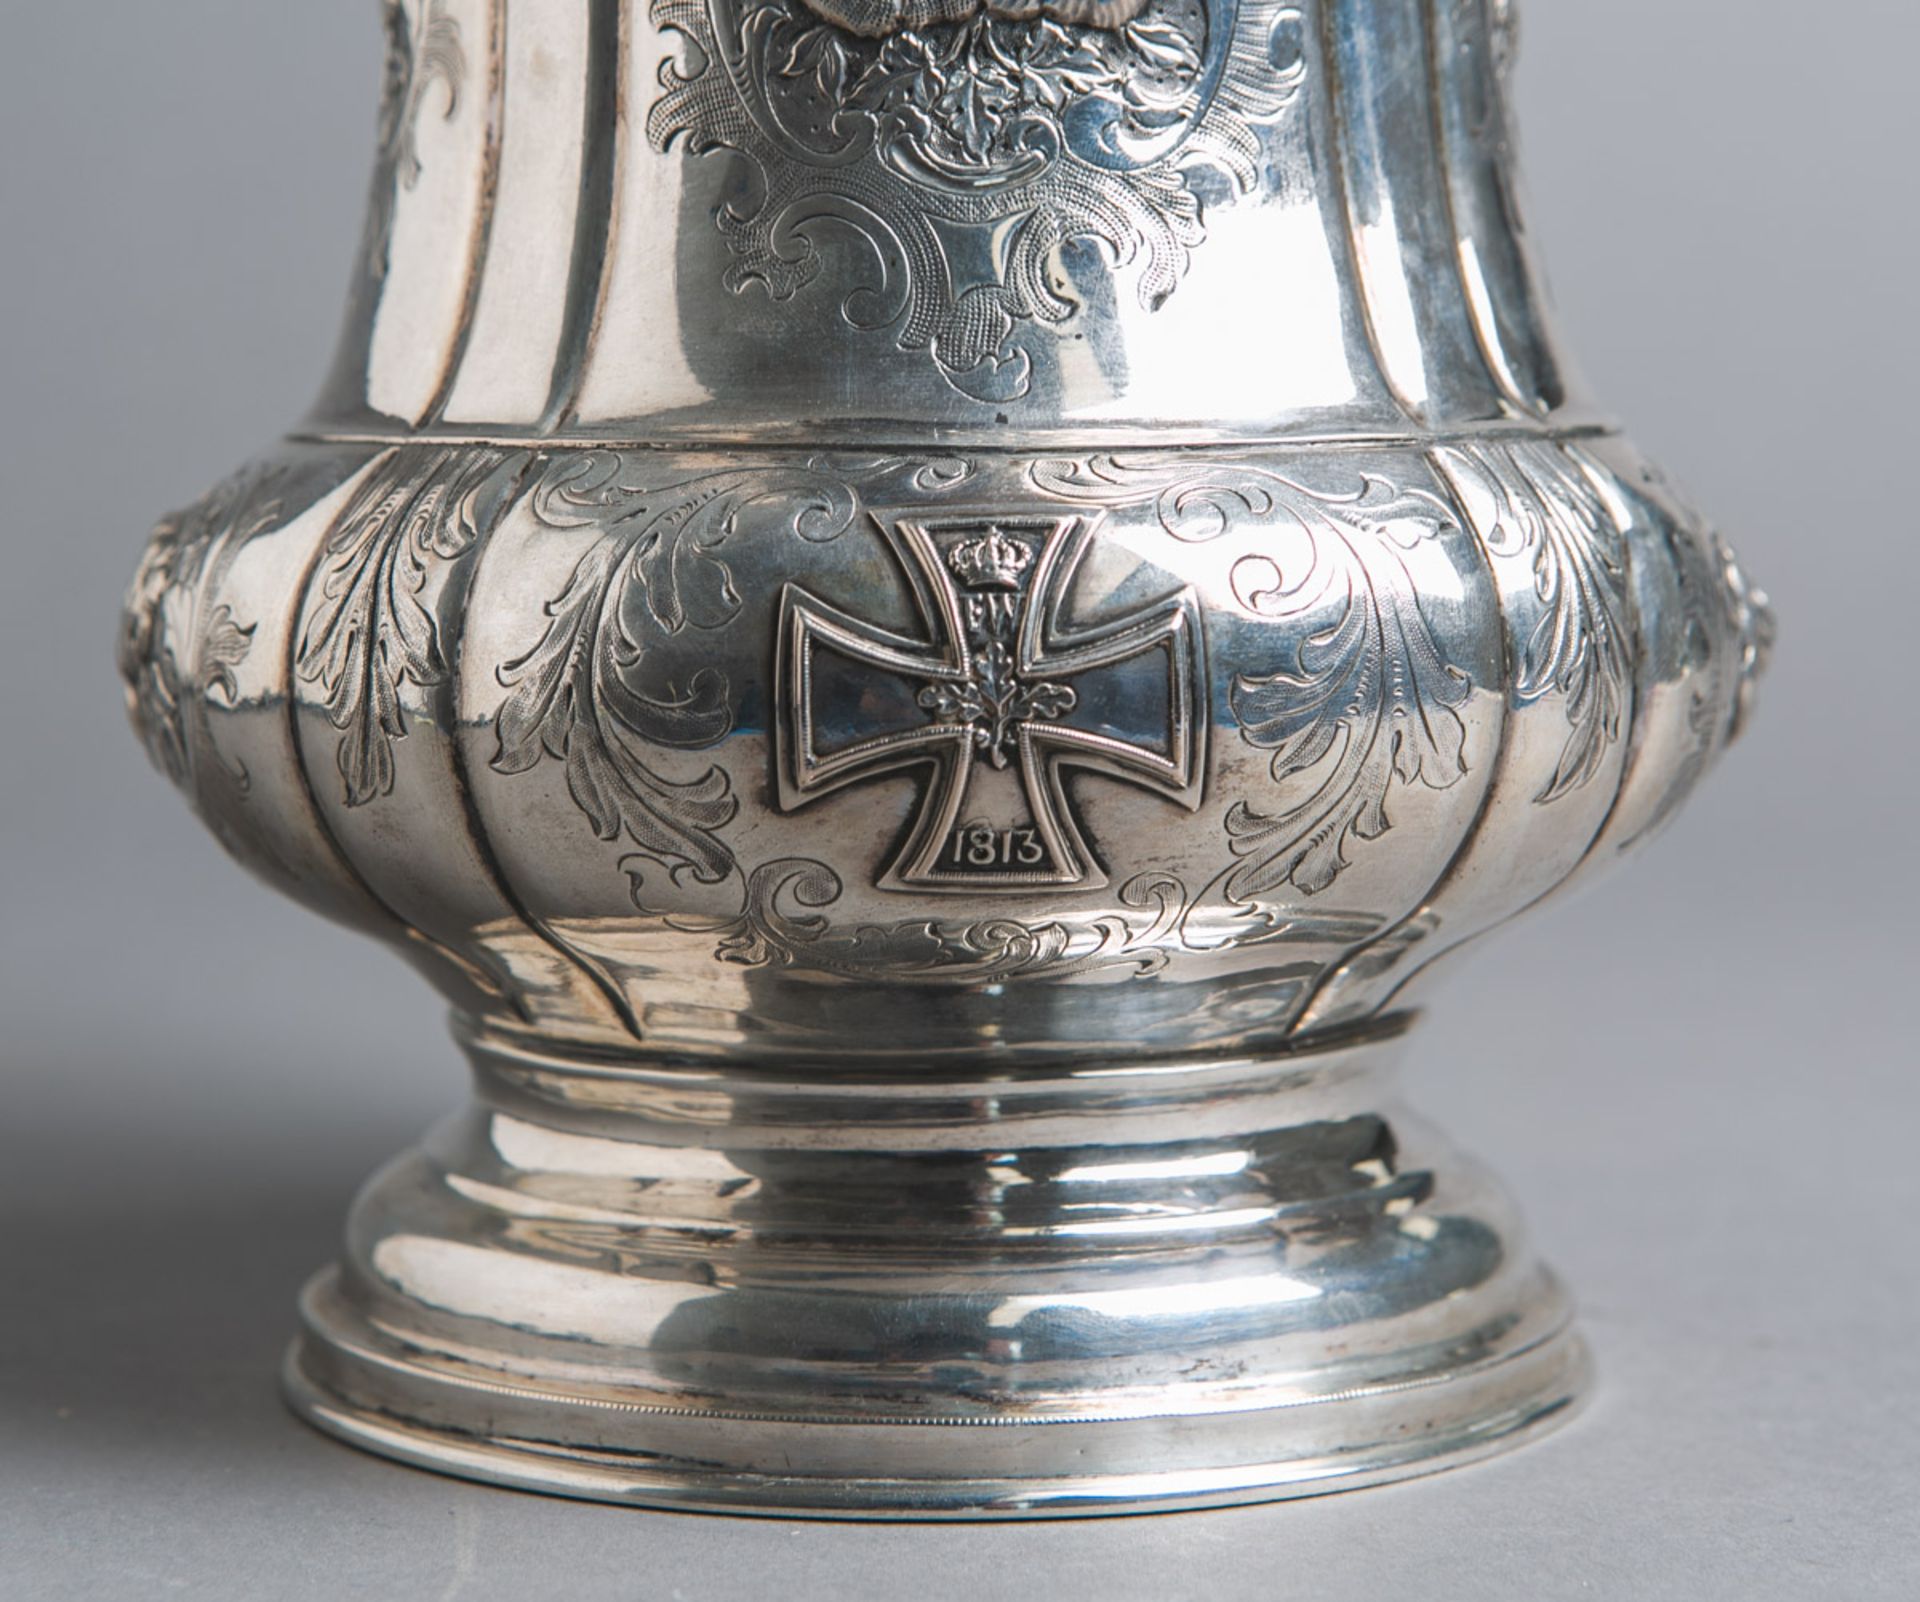 Historischer Silberhumpen mit aufgelegtem Eisernen Kreuz (um 1813) - Bild 2 aus 5